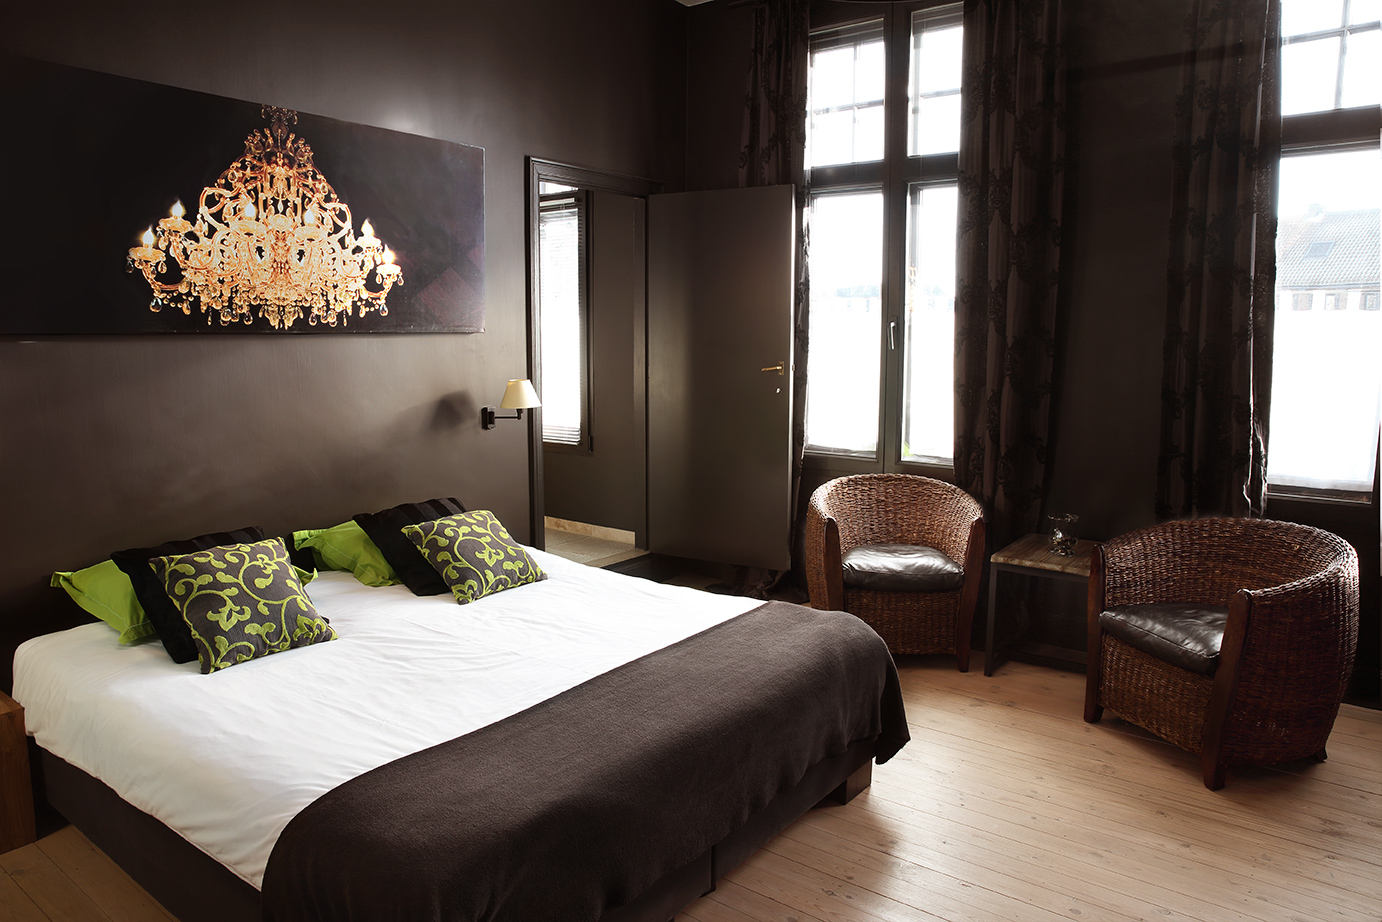 Bedroom in Brugge Belgium